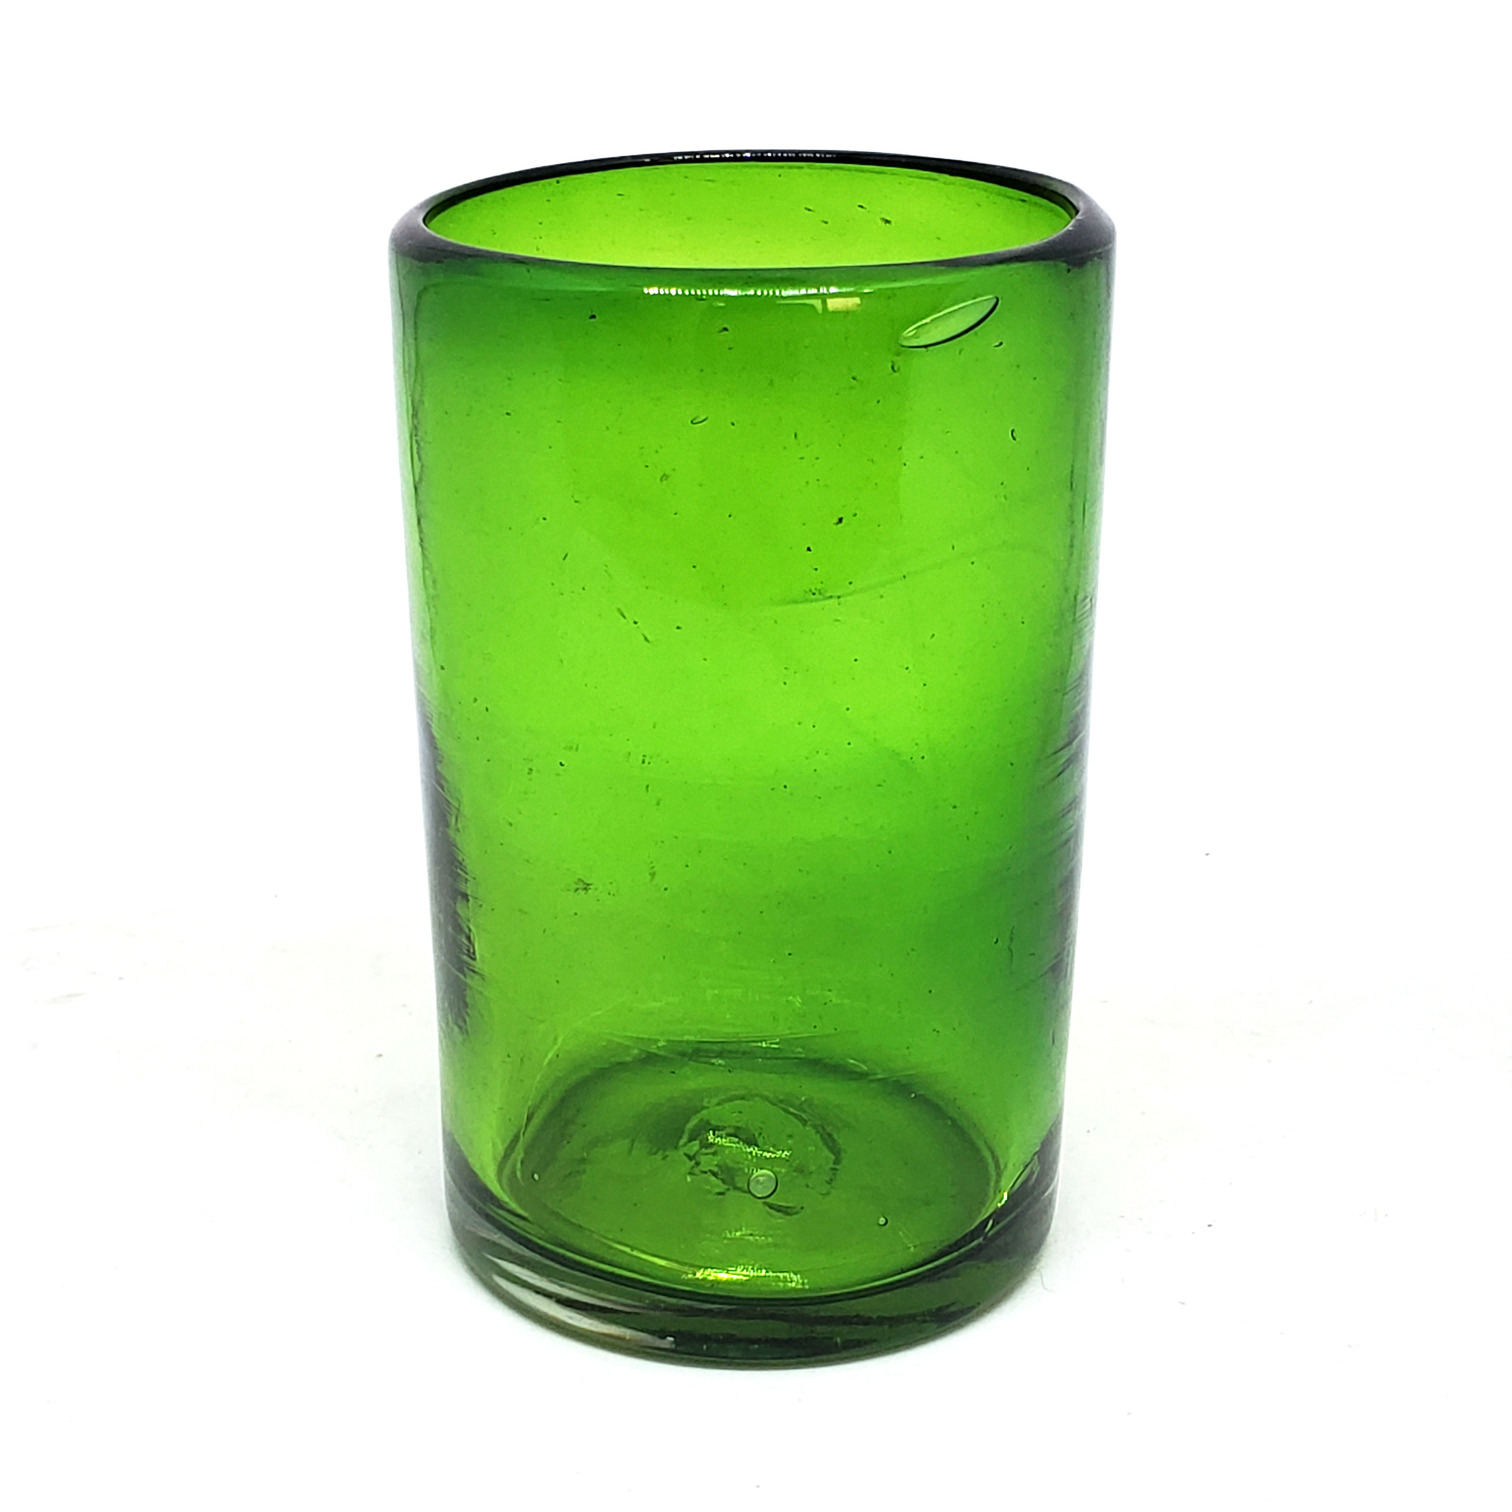 Novedades / Juego de 6 vasos grandes color verde esmeralda / �stos artesanales vasos le dar�n un toque cl�sico a su bebida favorita.